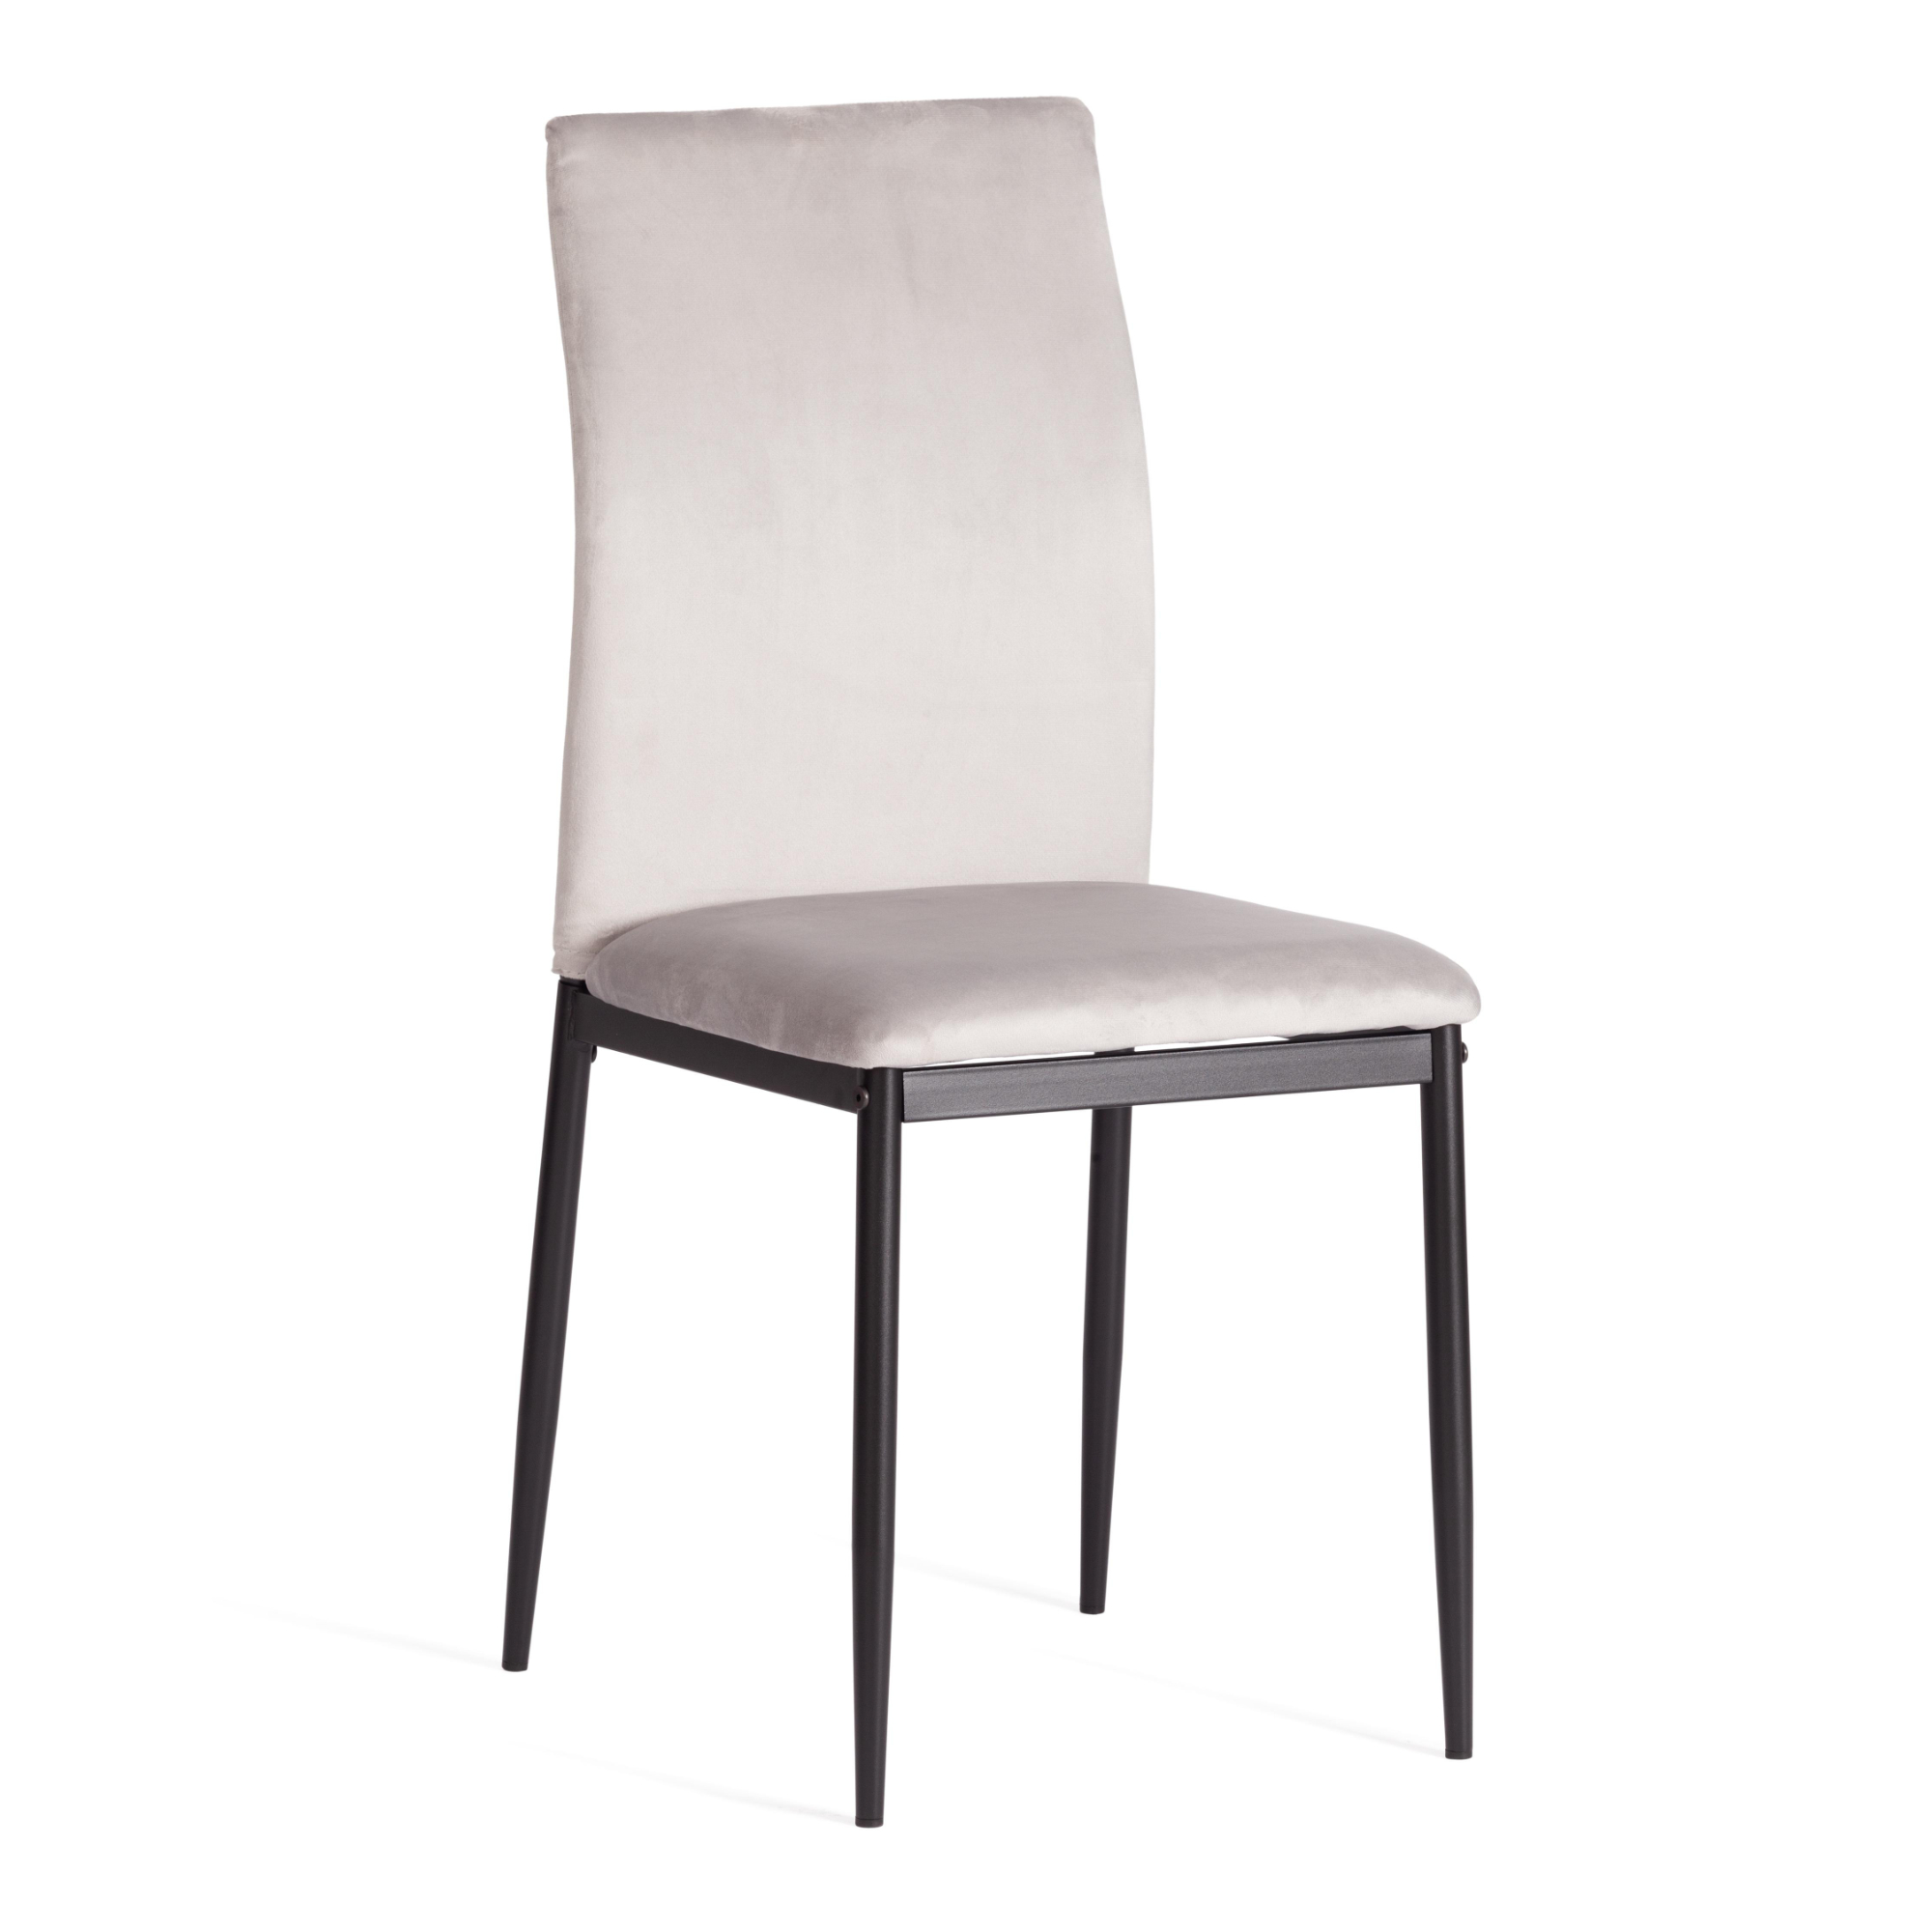 Стул ТС Capri светло-серый вельвет 49,5х41х93,5 см роскошный стул nordic светильник для макияжа домашний круглый стул для спальни туалетный стул сетчатый красный стул для макияжа милый табур